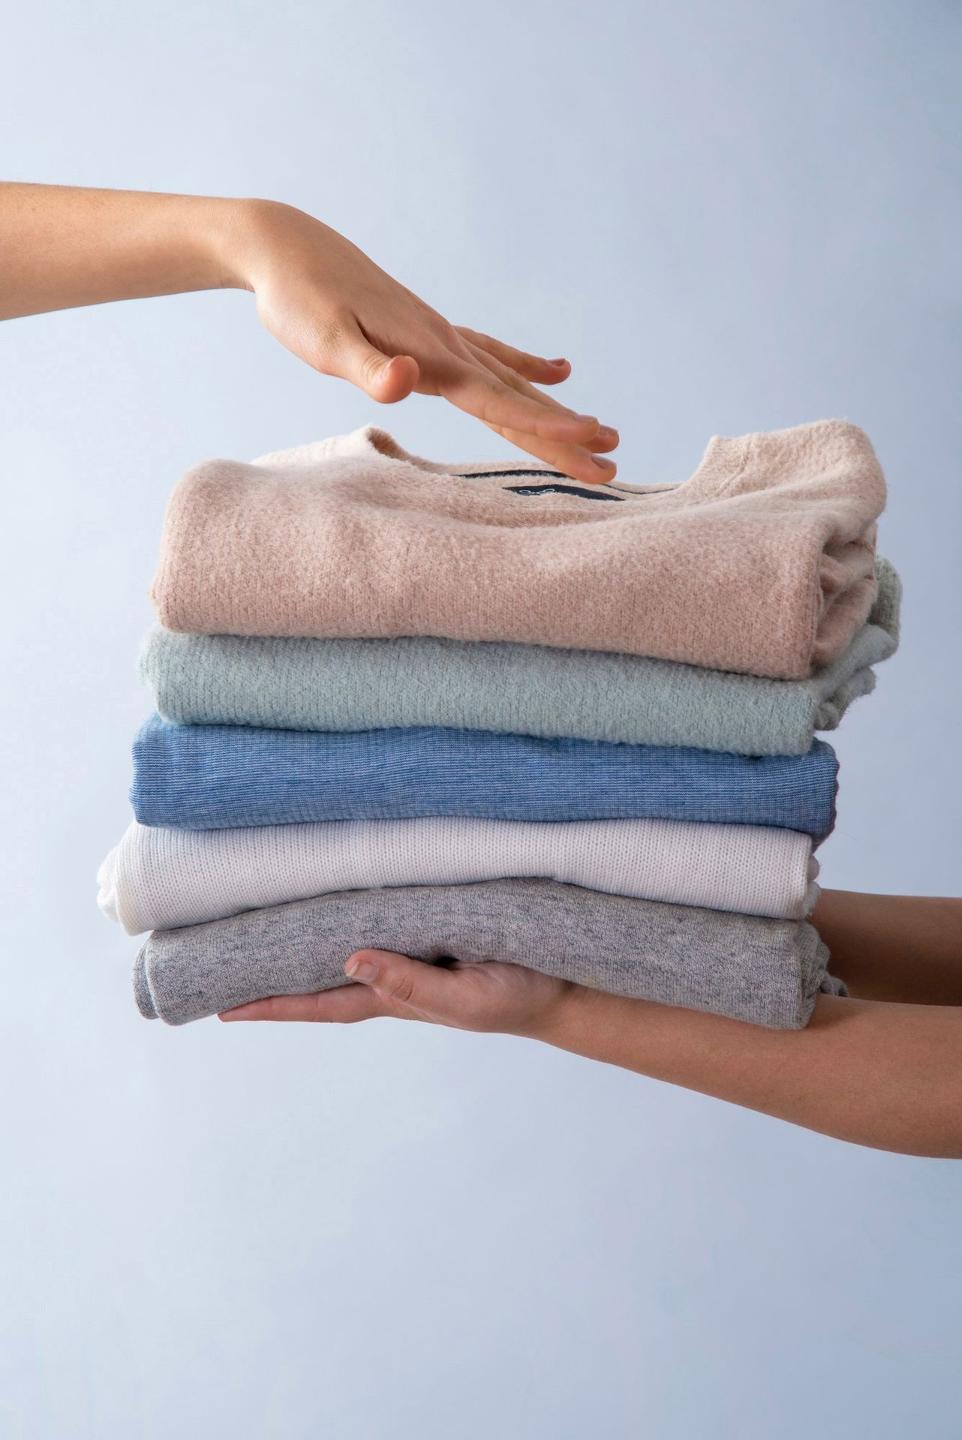 Dịch vụ giặt ủi chuyên nghiệp, chất lượng cao cấp đáng tin cậy cho quần áo, trang phục thời trang, đồ vải của bạn và gia đình cung cấp bởi Giặt ủi 247.